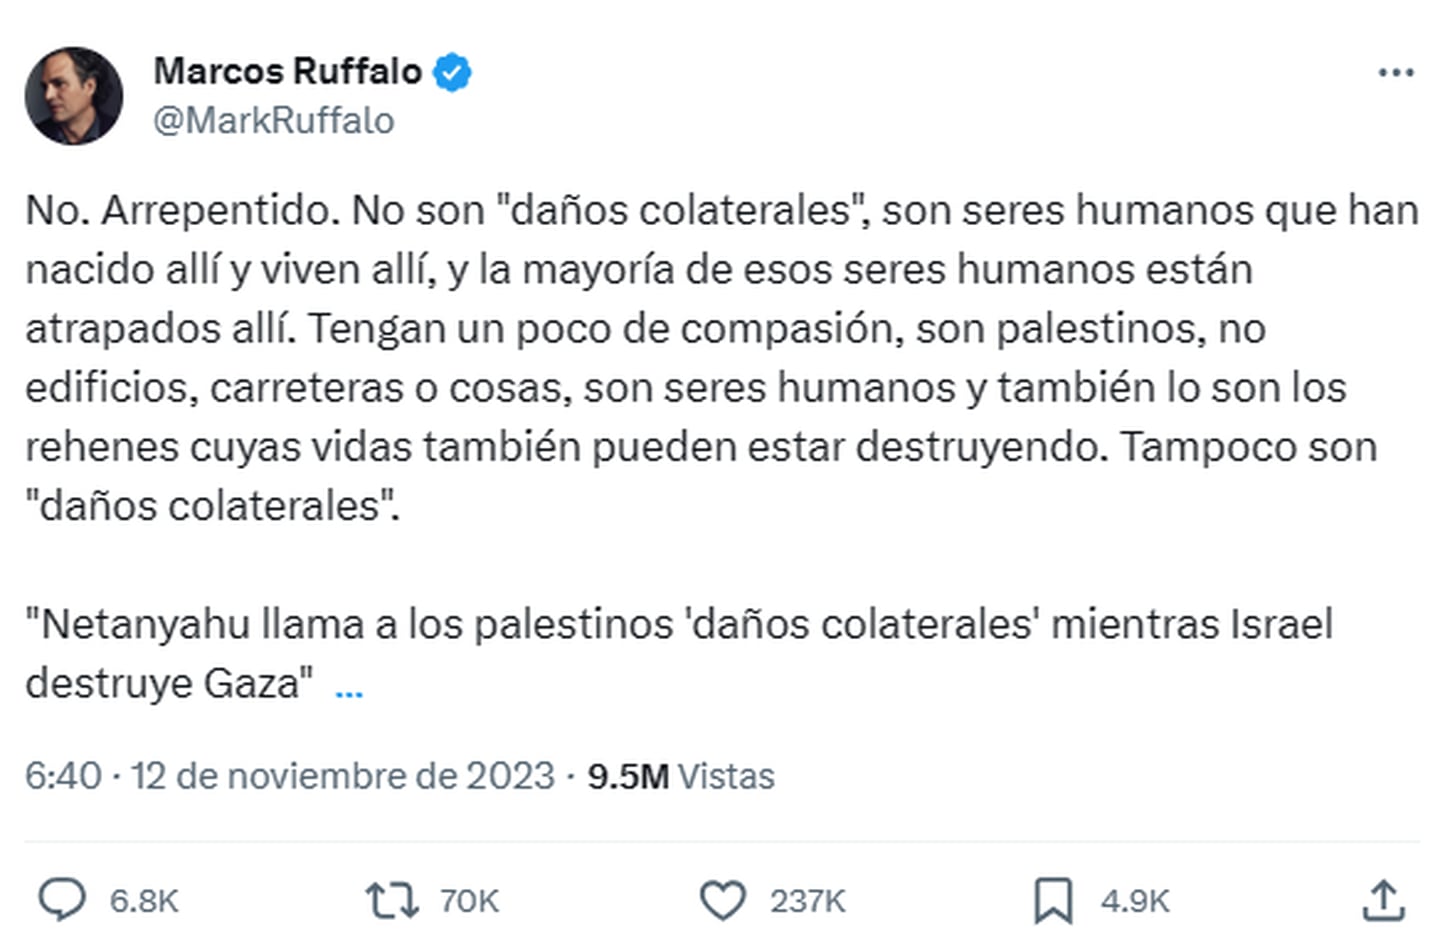 Mark Ruffalo